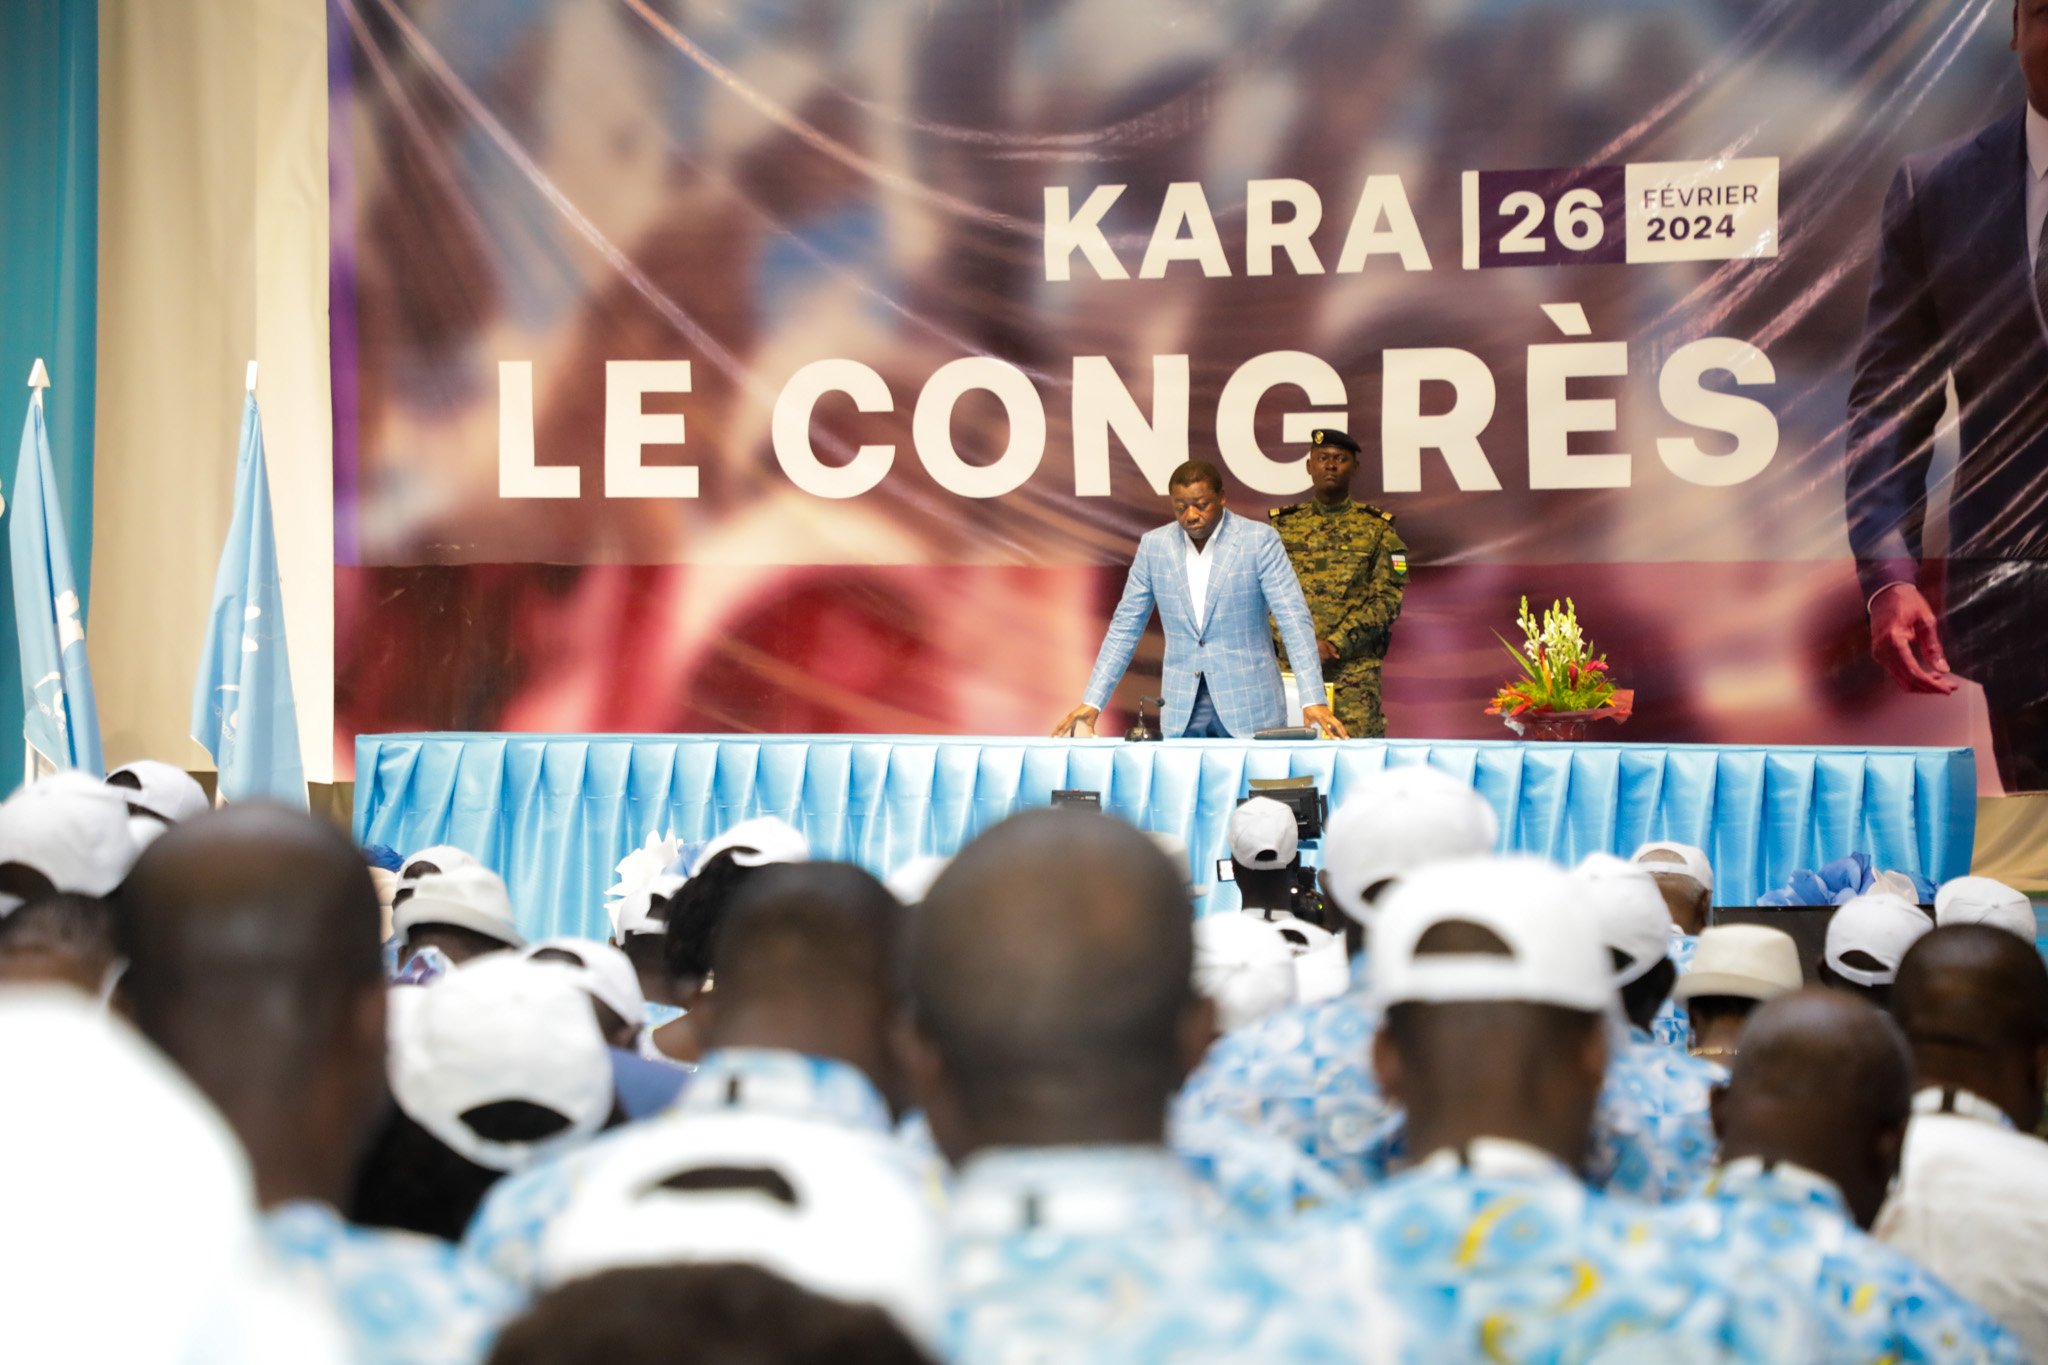 Ce lundi 26 février 2024, le président de la République, Faure Gnassingbé, a donné le coup d'envoi du 2e congrès statutaire de son parti.